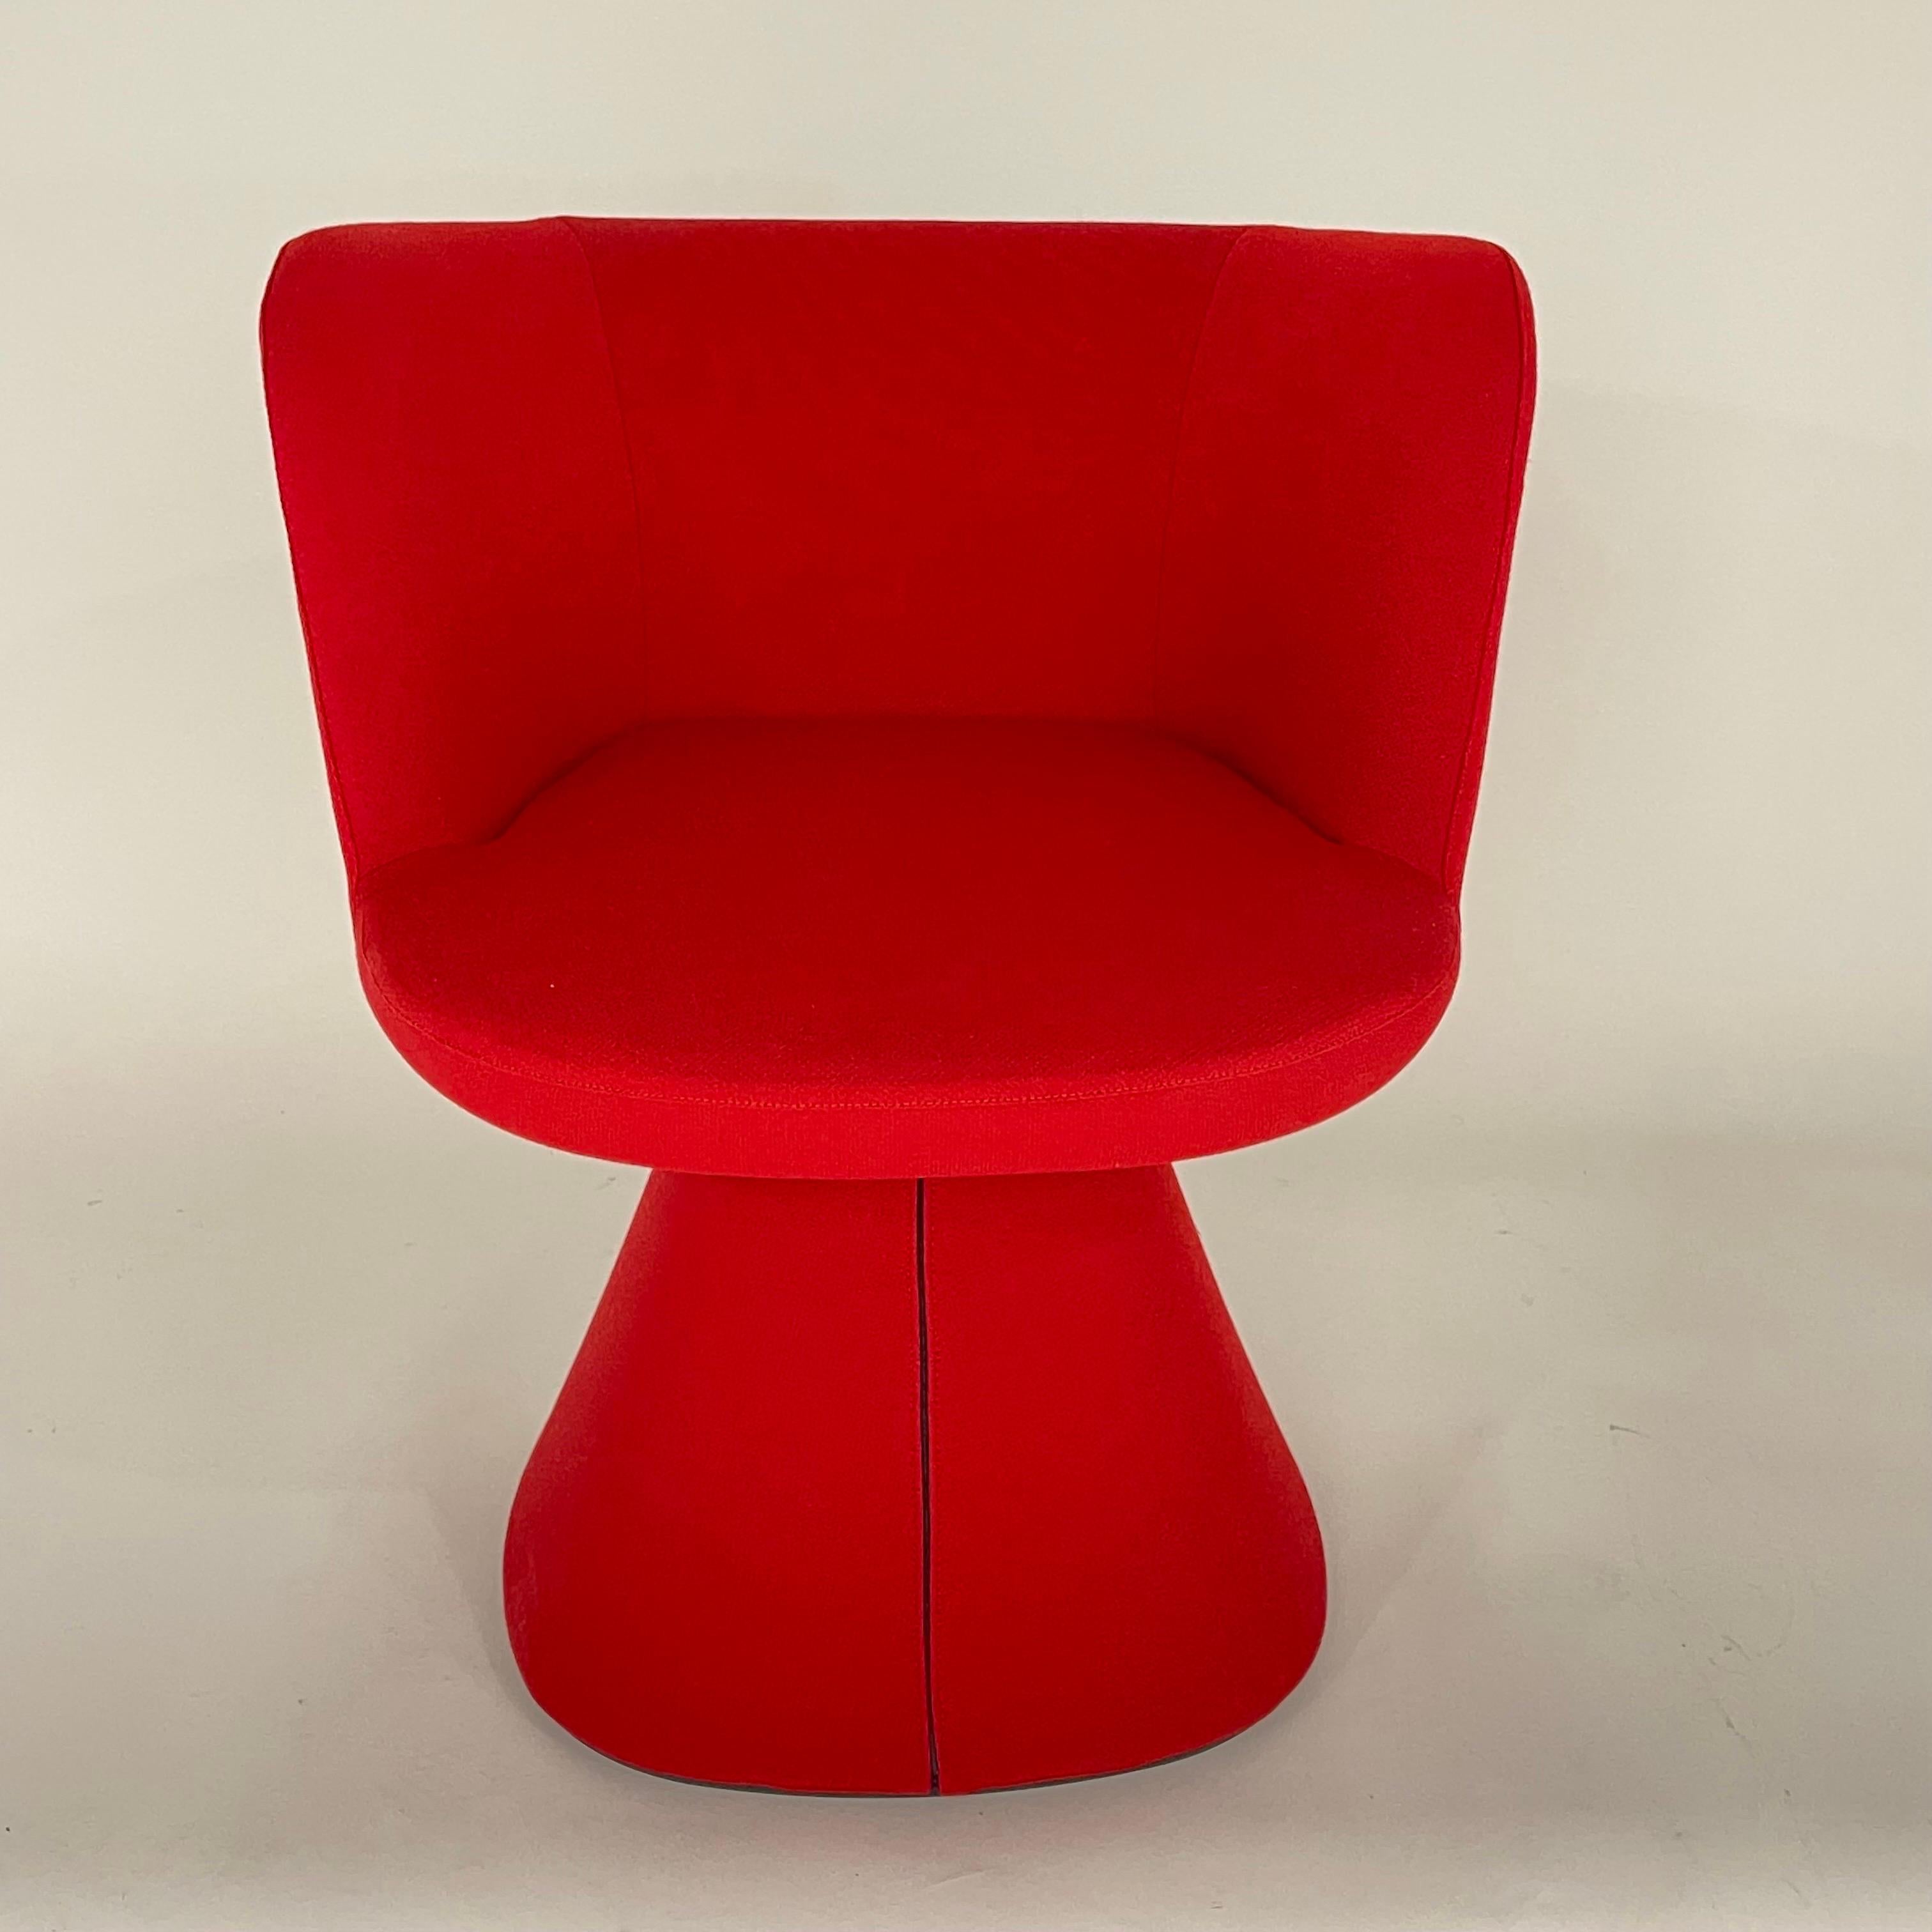 Modernes Set aus vier drehbaren Flair O'-Esszimmerstühlen in luxuriösem rotem Stoff mit automatischem Rückstellmechanismus, ideal für Esszimmerstühle, Spielstühle oder Beistellstühle.  Entworfen von Monica Armani für B & B Italia, Italien 2022